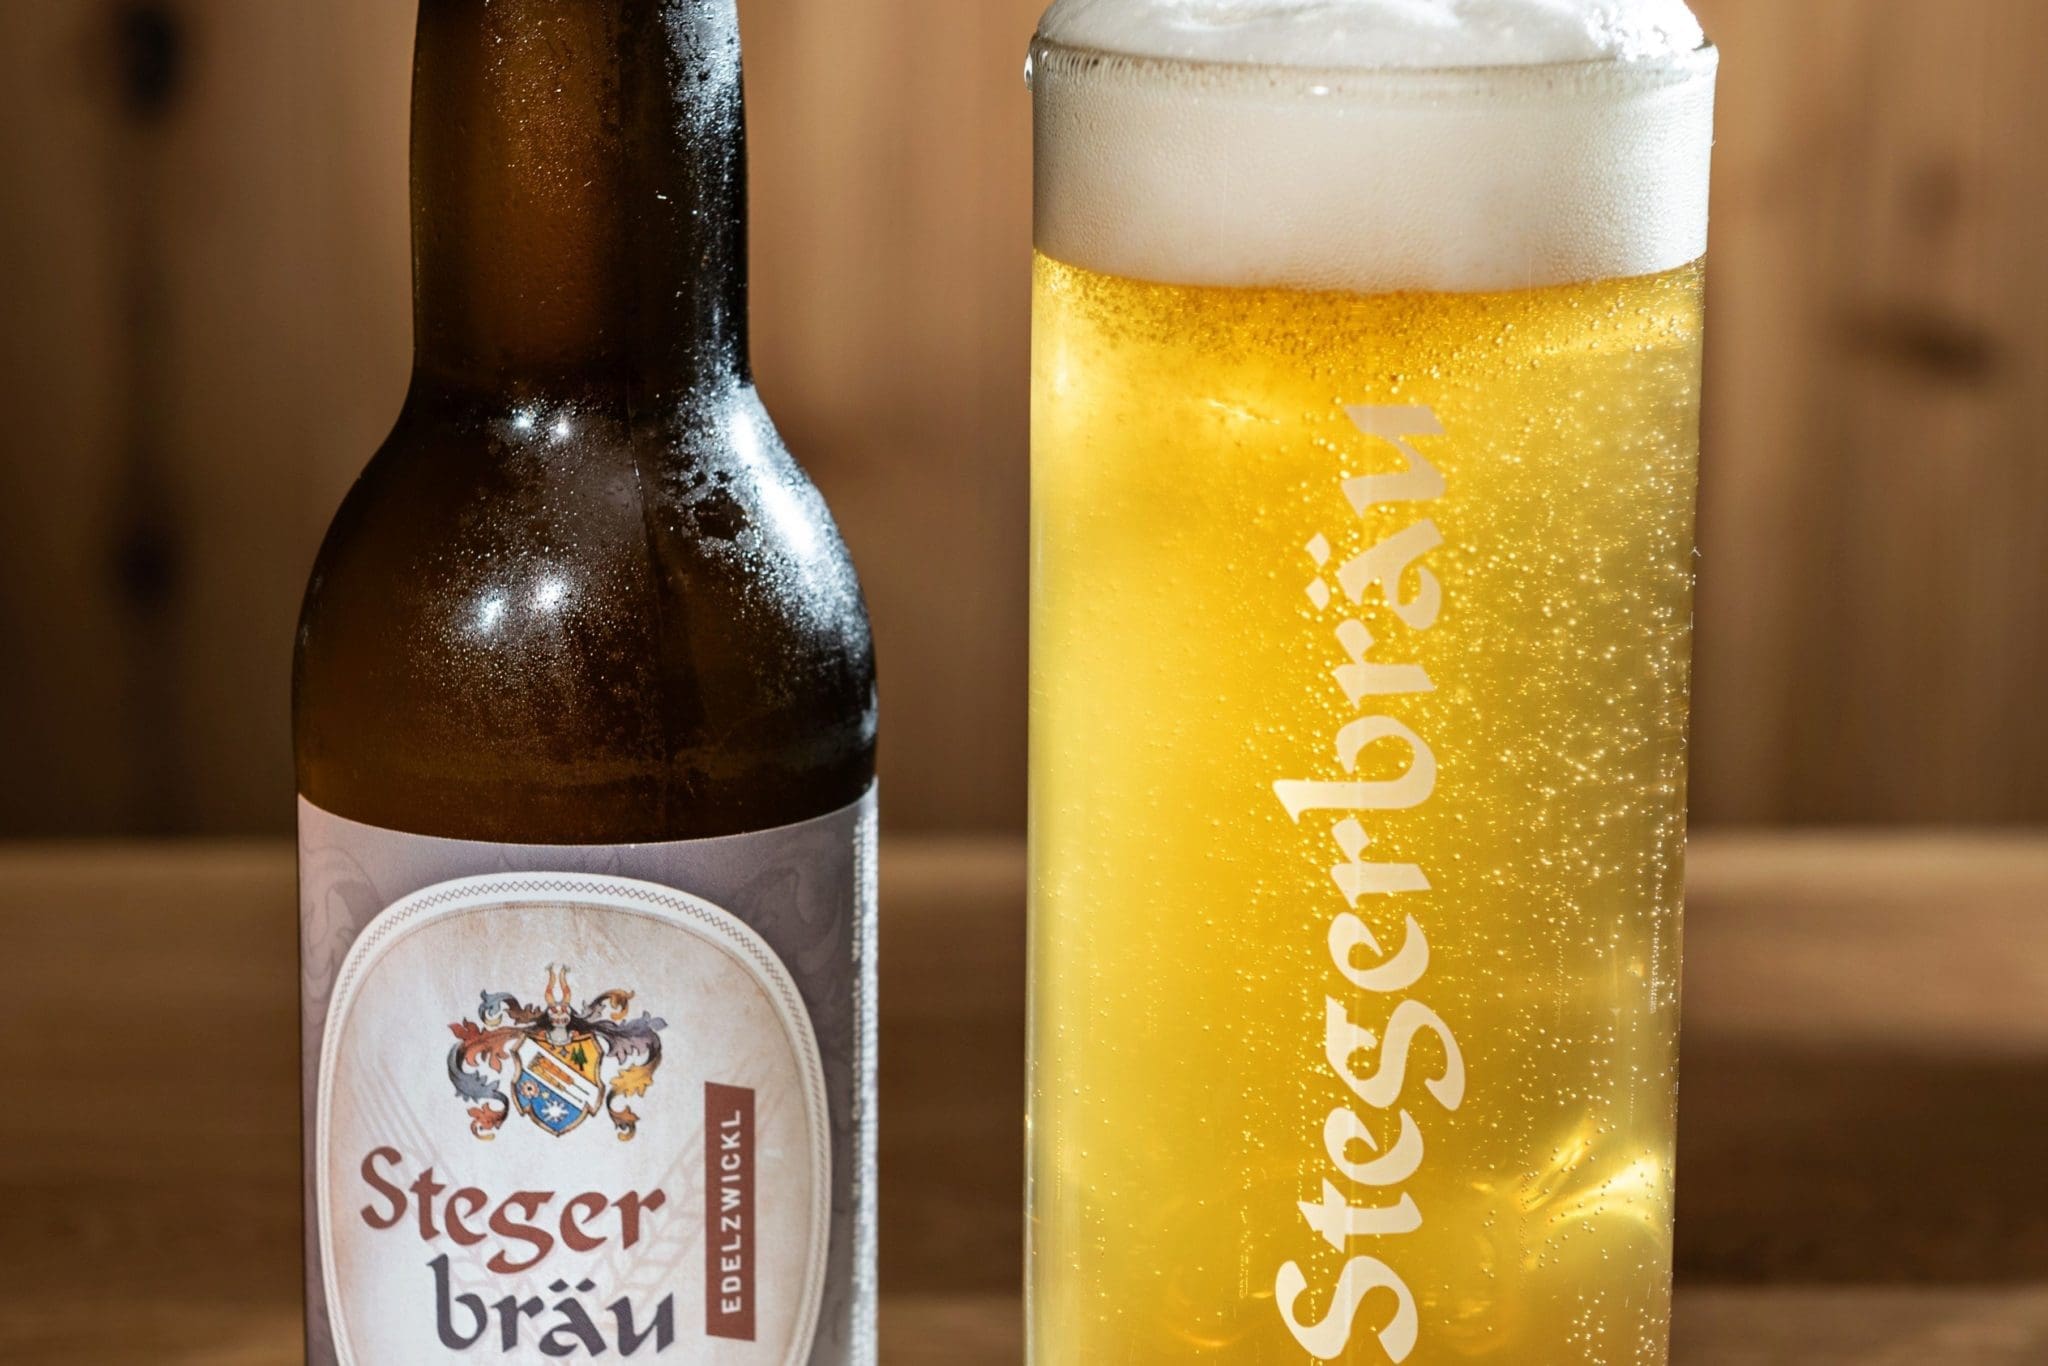 Das Stegerbräu Bier - ein Edelzwickl, gibt es frisch gezapft oder in der Flasche.